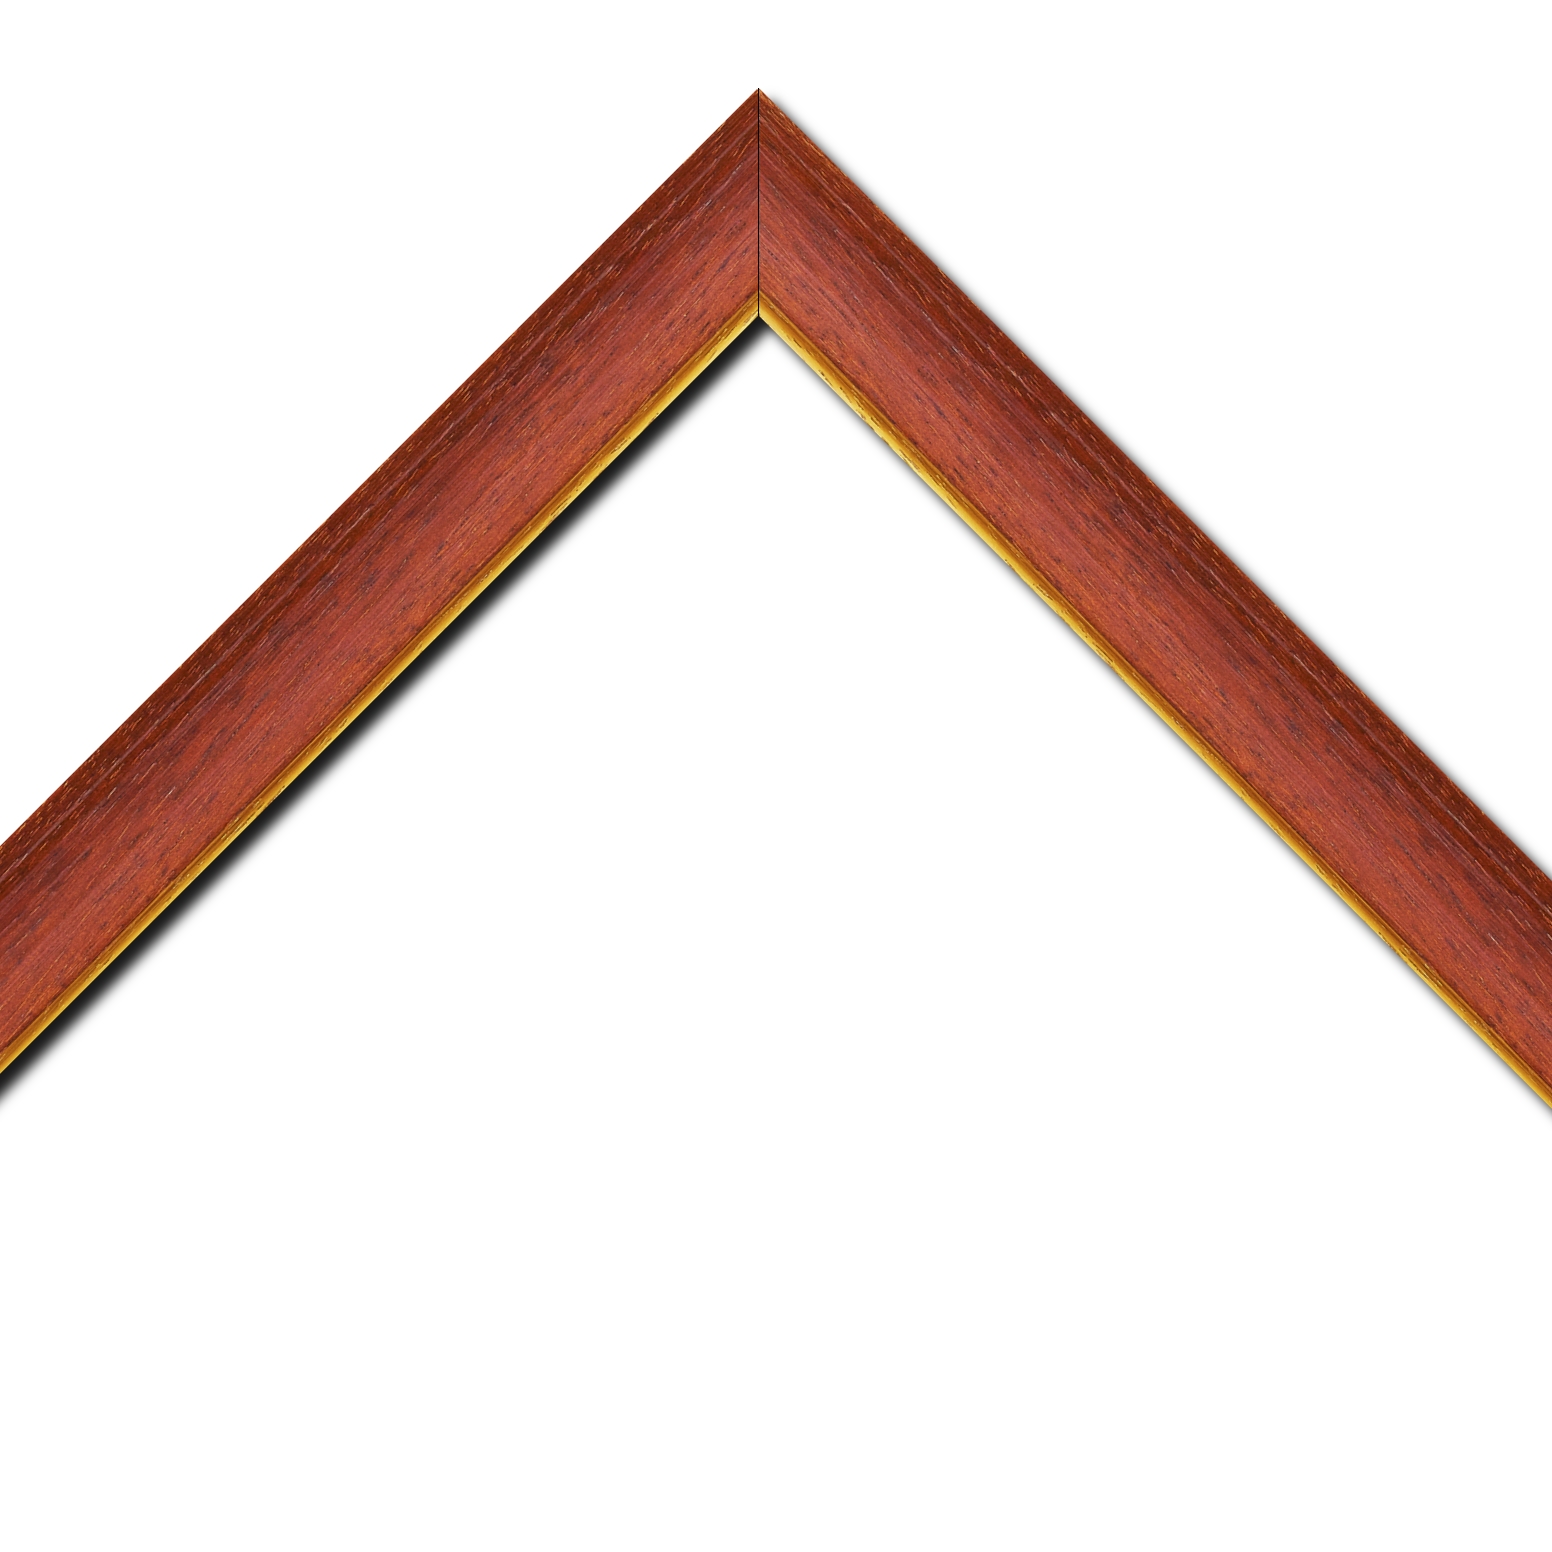 Baguette bois profil incurvé largeur 3.9cm couleur rouge cerise satiné filet or